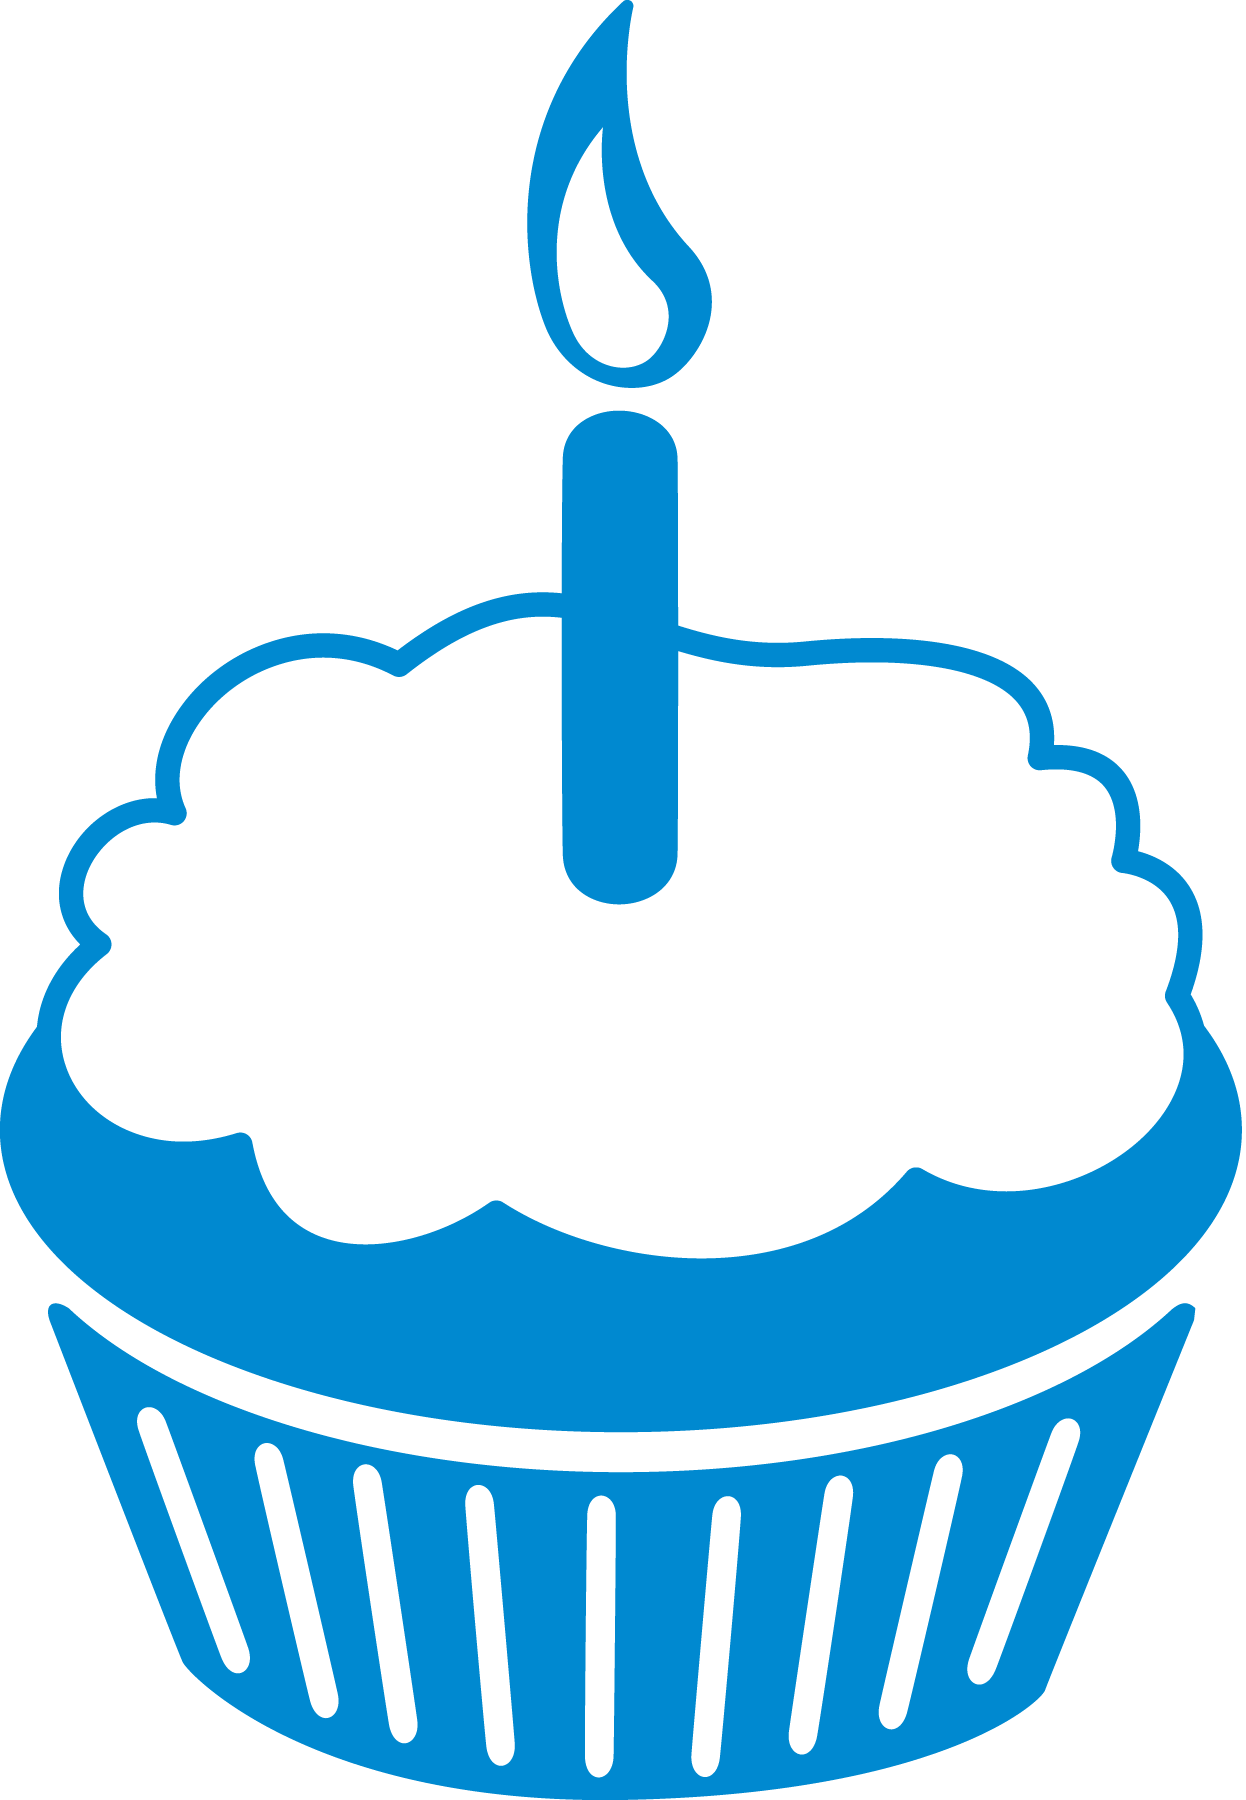 cartoon image of a cupcake